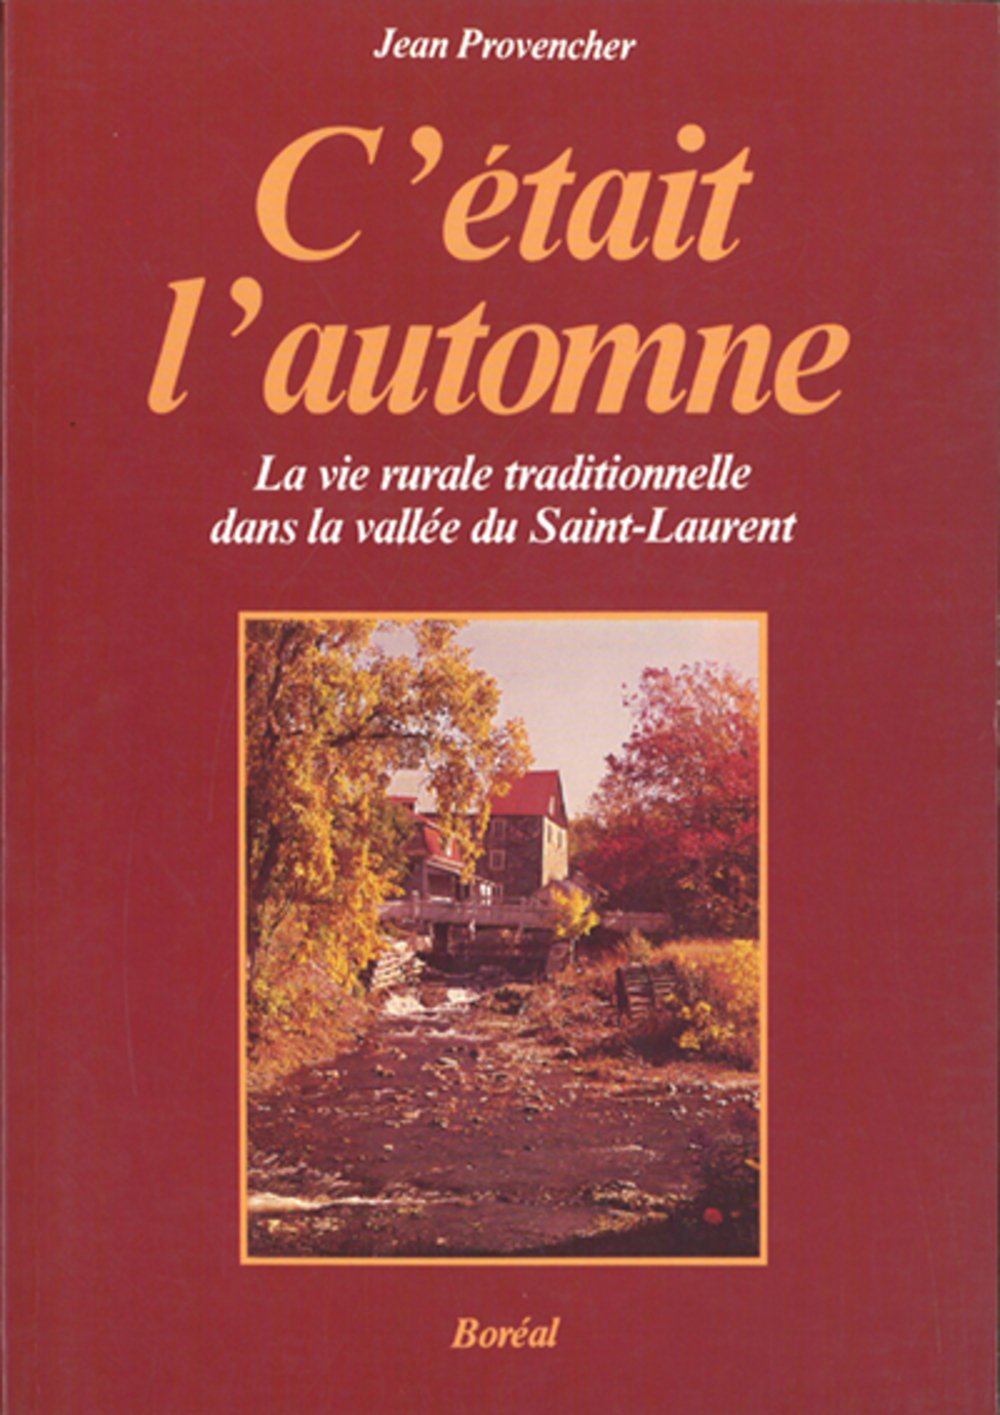 Livre ISBN 2890521206 C'était l'automne : La vie rurale traditionnelle dans la vallée du Saint-Laurent (Jean Provencher)